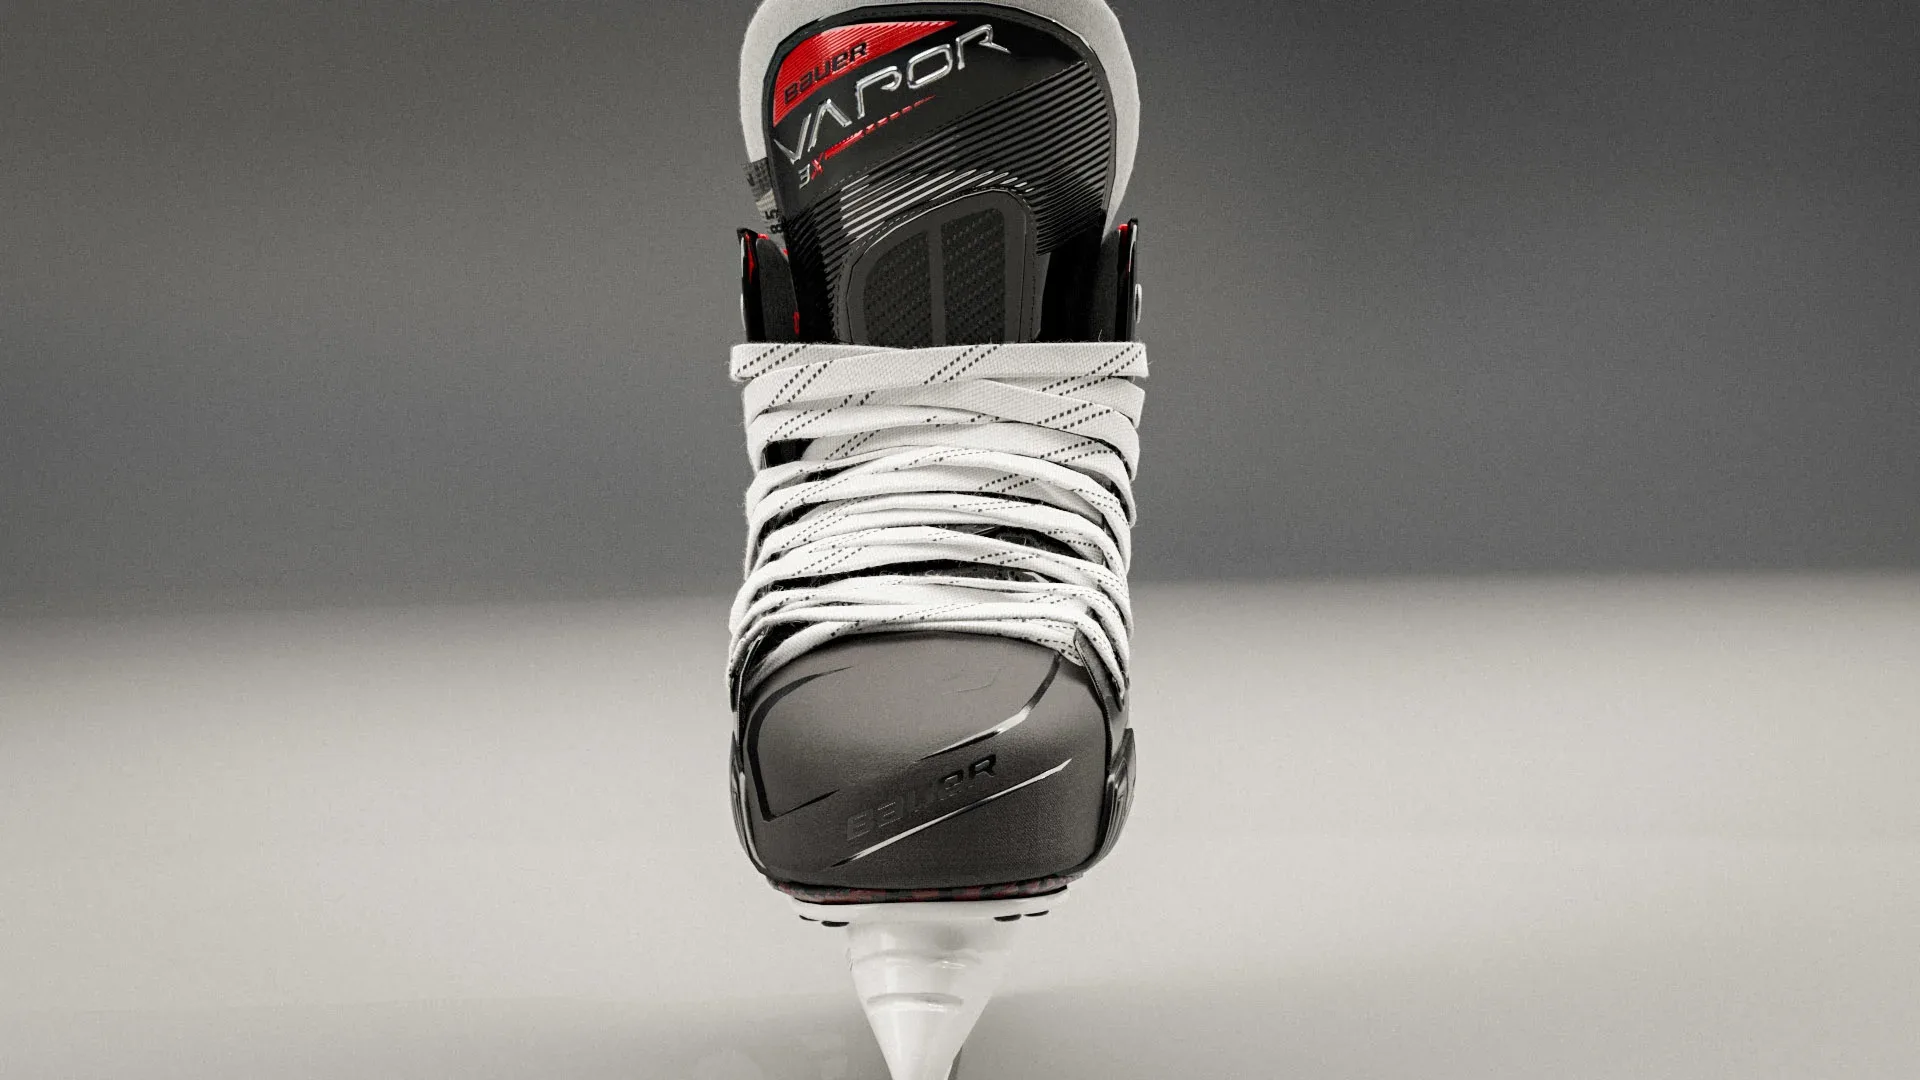 High quality 3d model of The Bauer Vapor 3X hockey skates